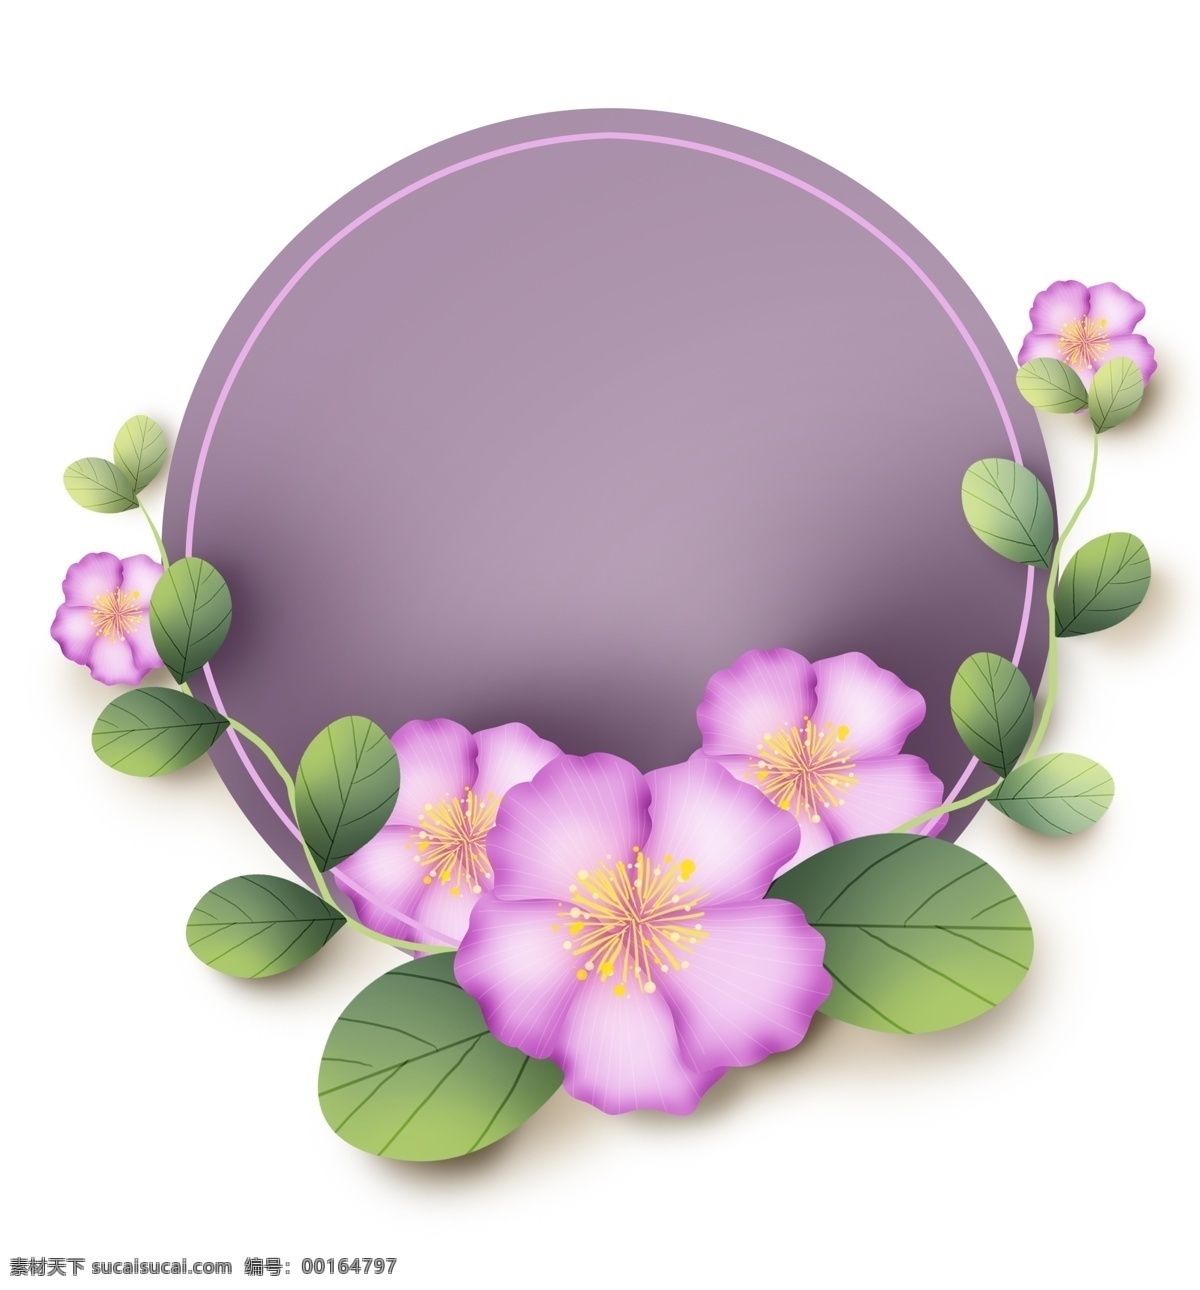 春天 花卉 圆形 文字 框 春天文字框 叶子 花卉标题框 花朵 绿色 粉色 立体 春天对话框 春季 紫色 淡紫色 植物